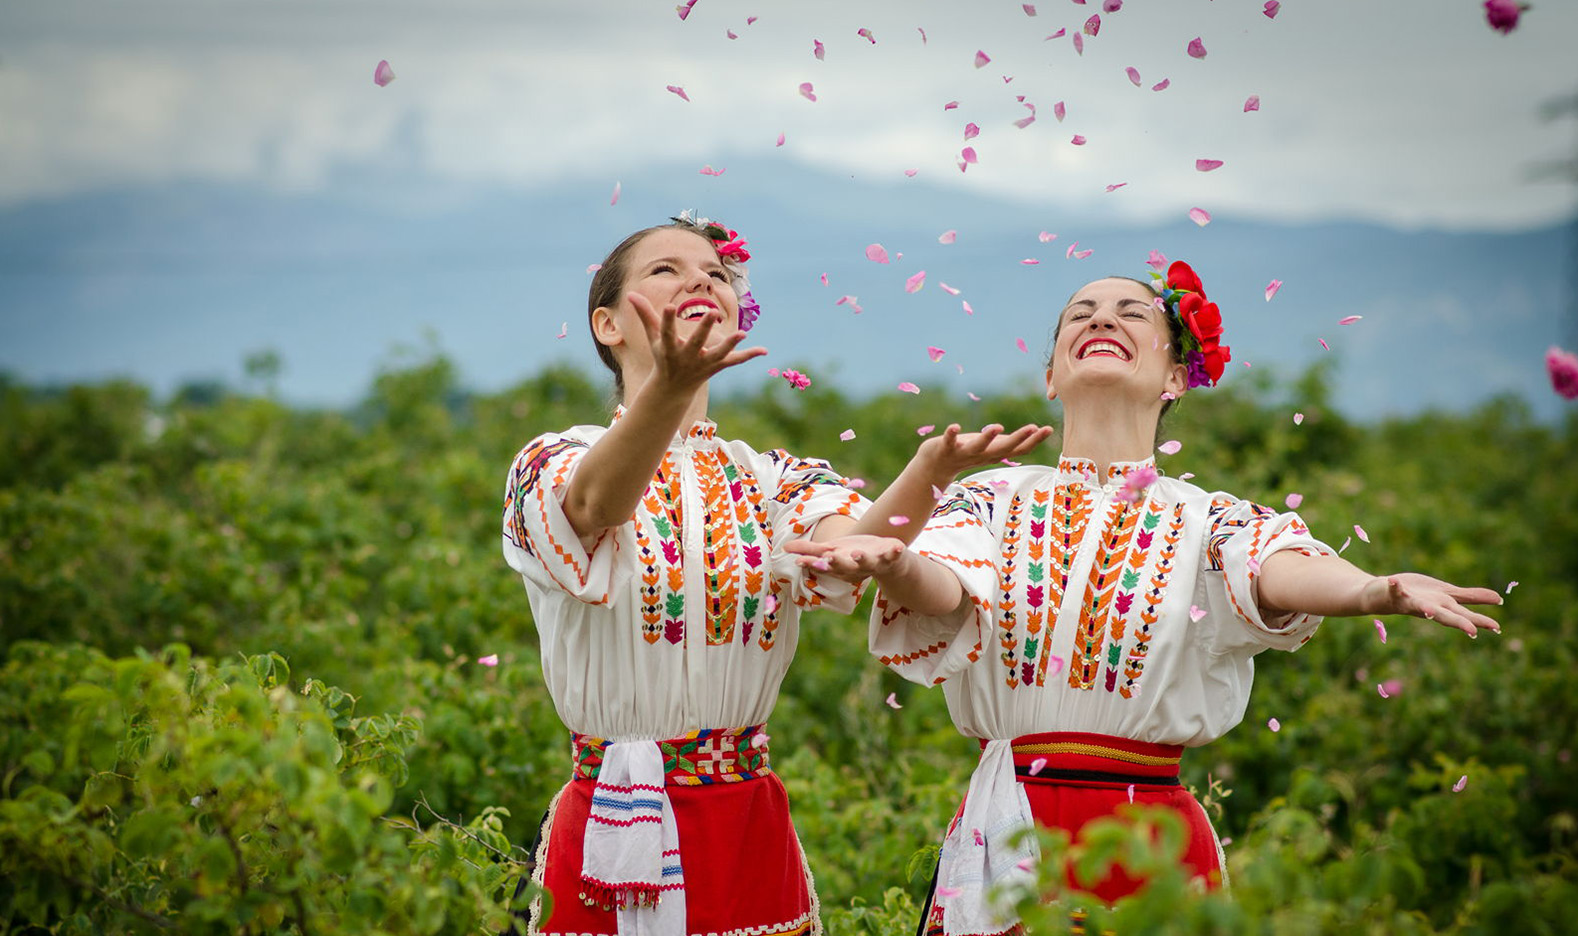 762618 Tất tật thông tin cần biết về lễ hội hoa hồng Bulgaria lớn nhất Việt Nam